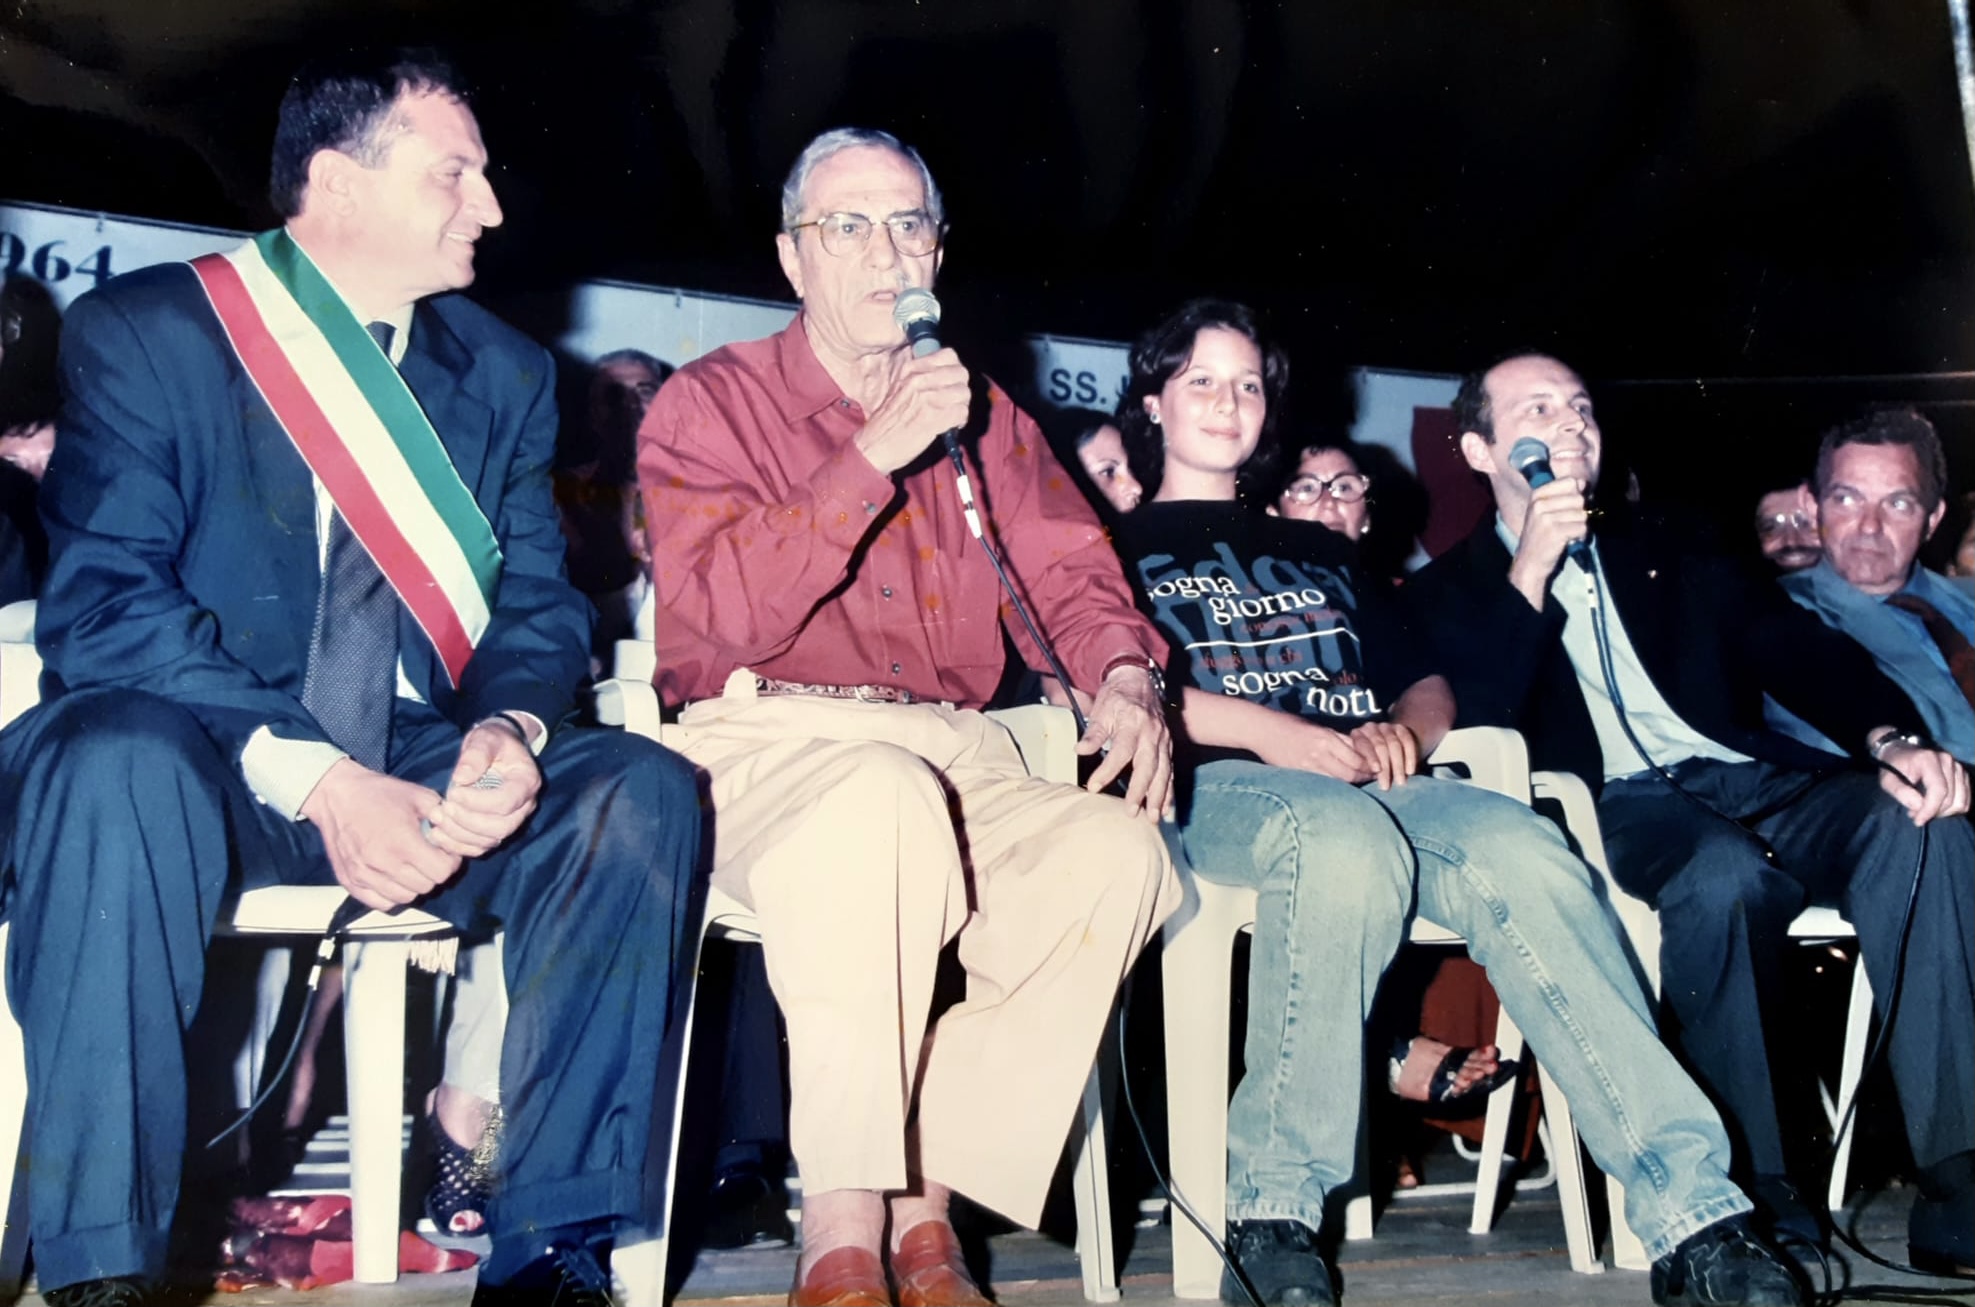 Il centenario della nascita del concittadino onorario Nino Manfredi, ospite di Scauri per 40 anni